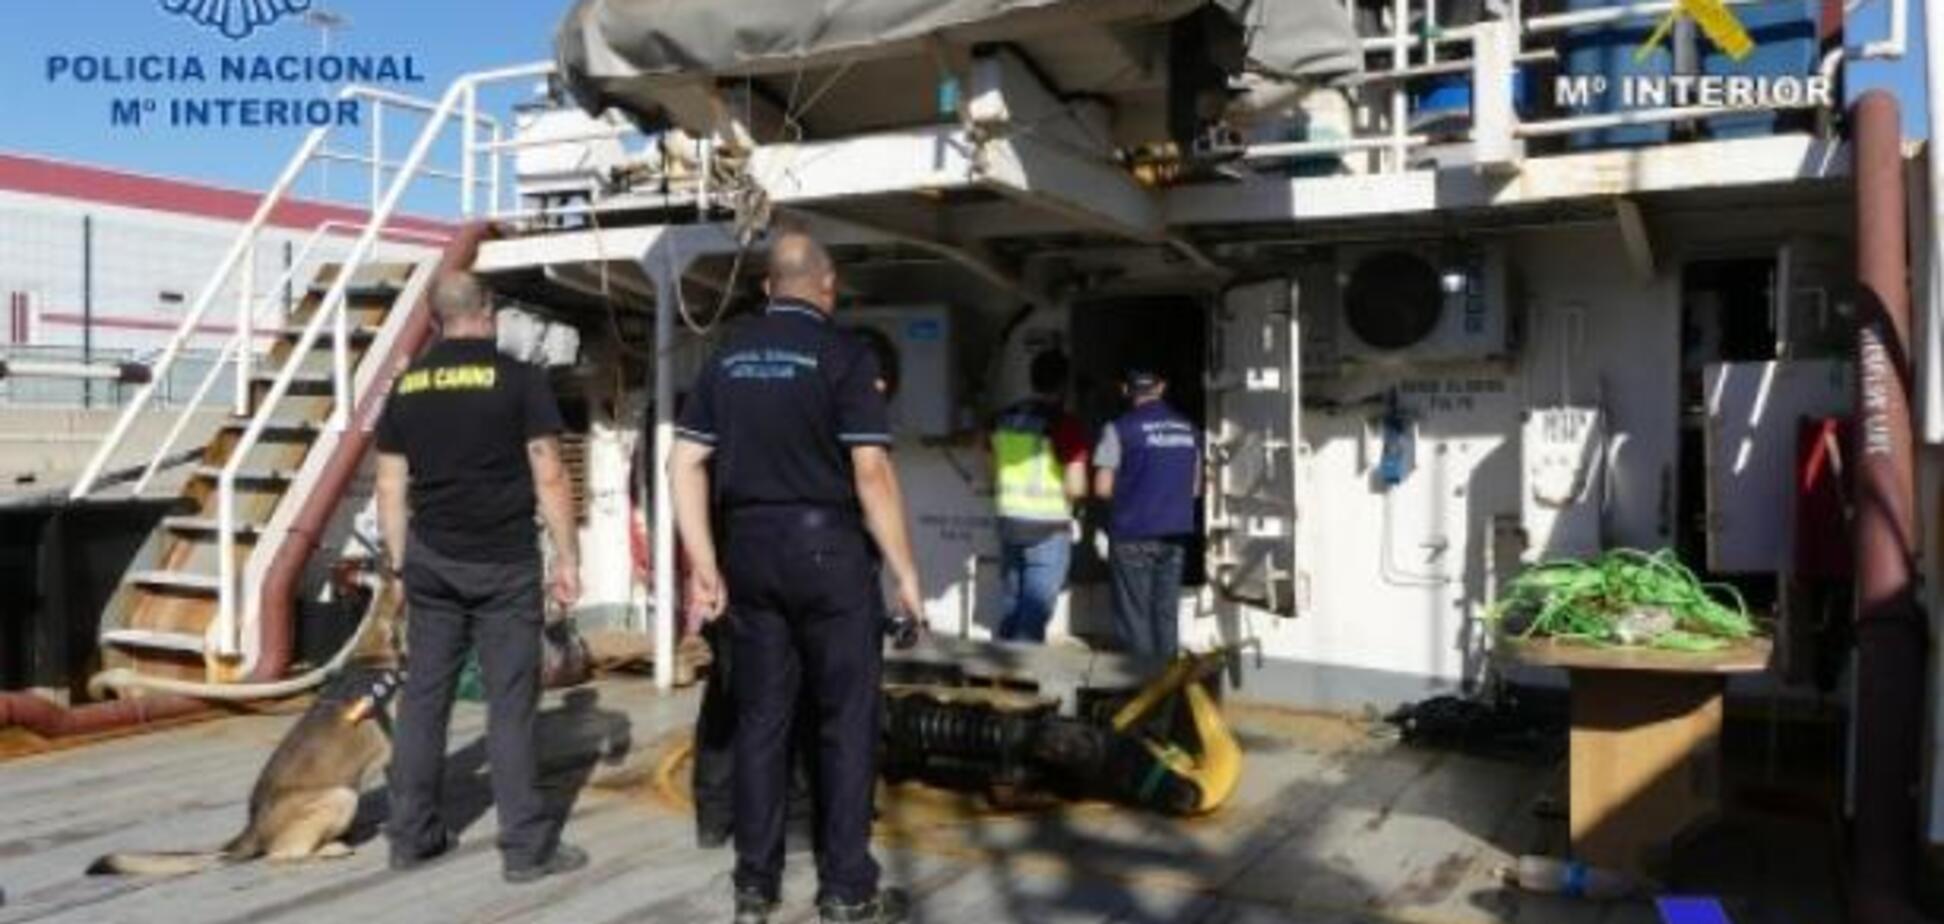 'Загашник' на 4 тонни: в Іспанії показали грандіозне перевезення кокаїну